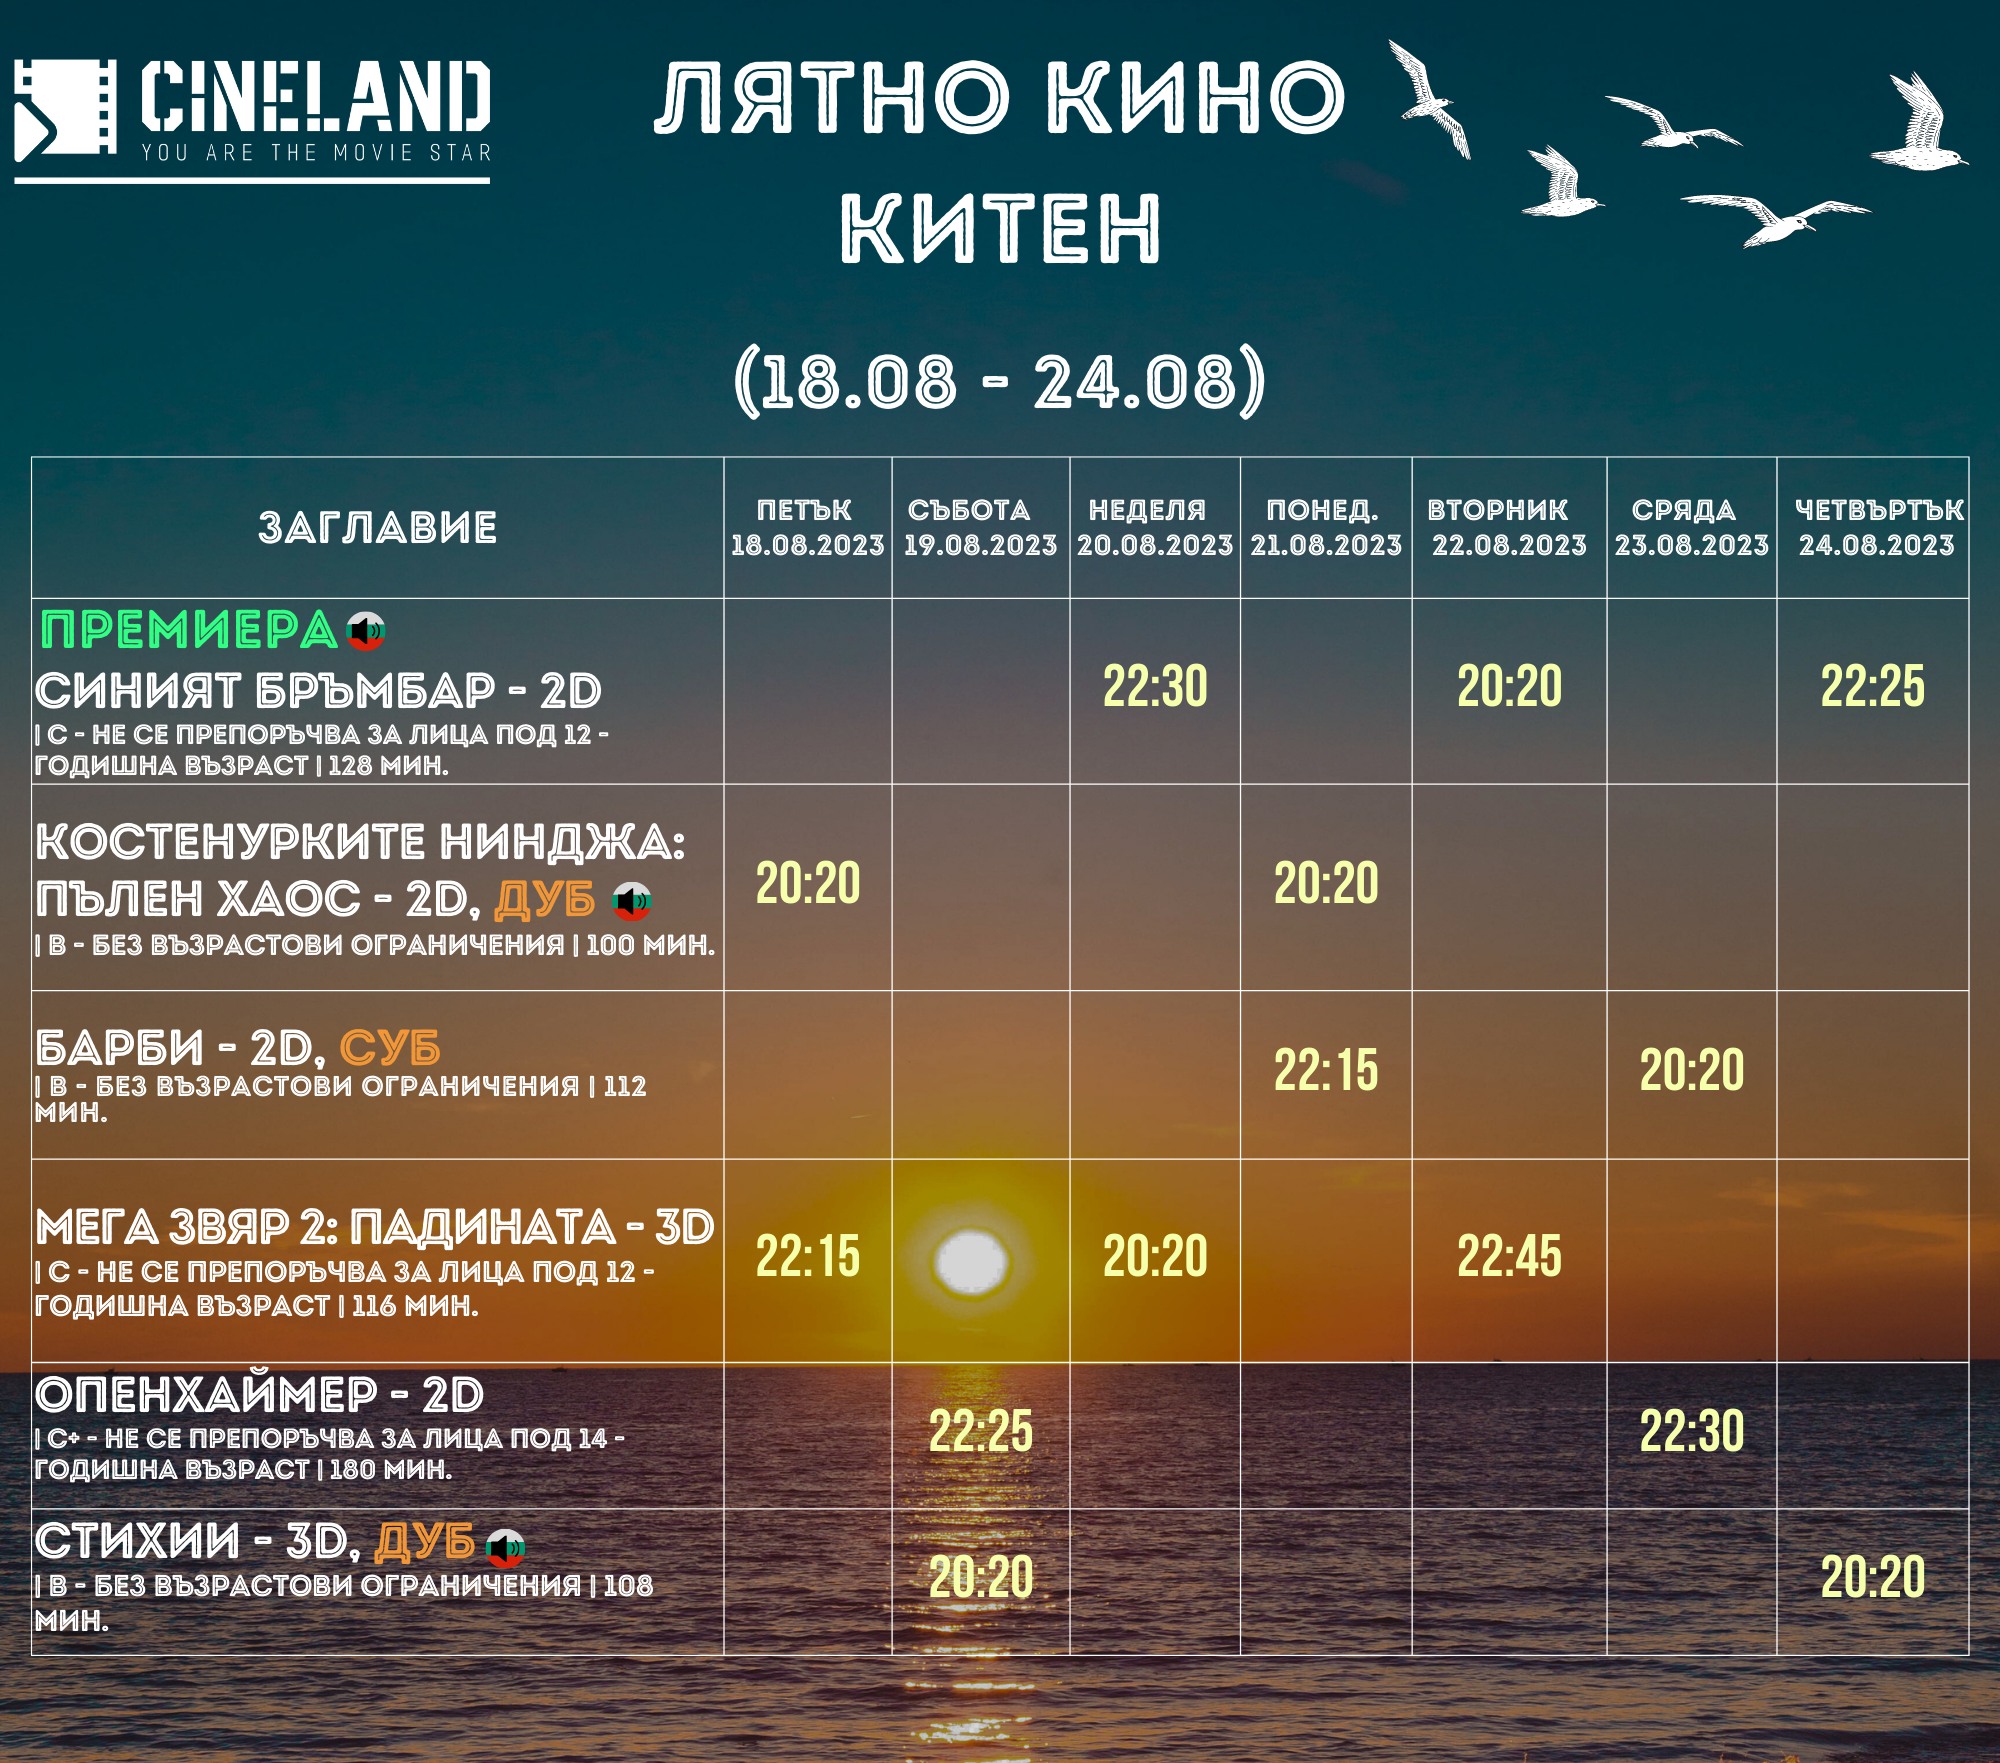 Cineland :      18-24.08.2023